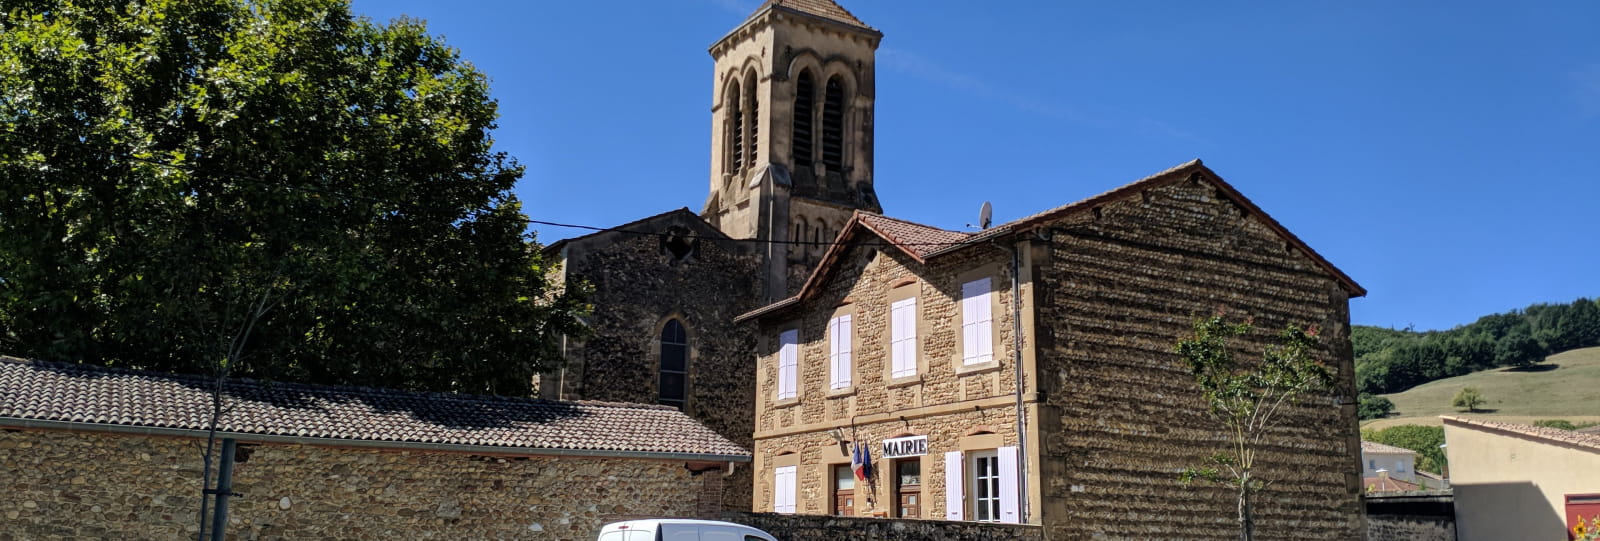 Village de Saint-Michel-sur-Savasse